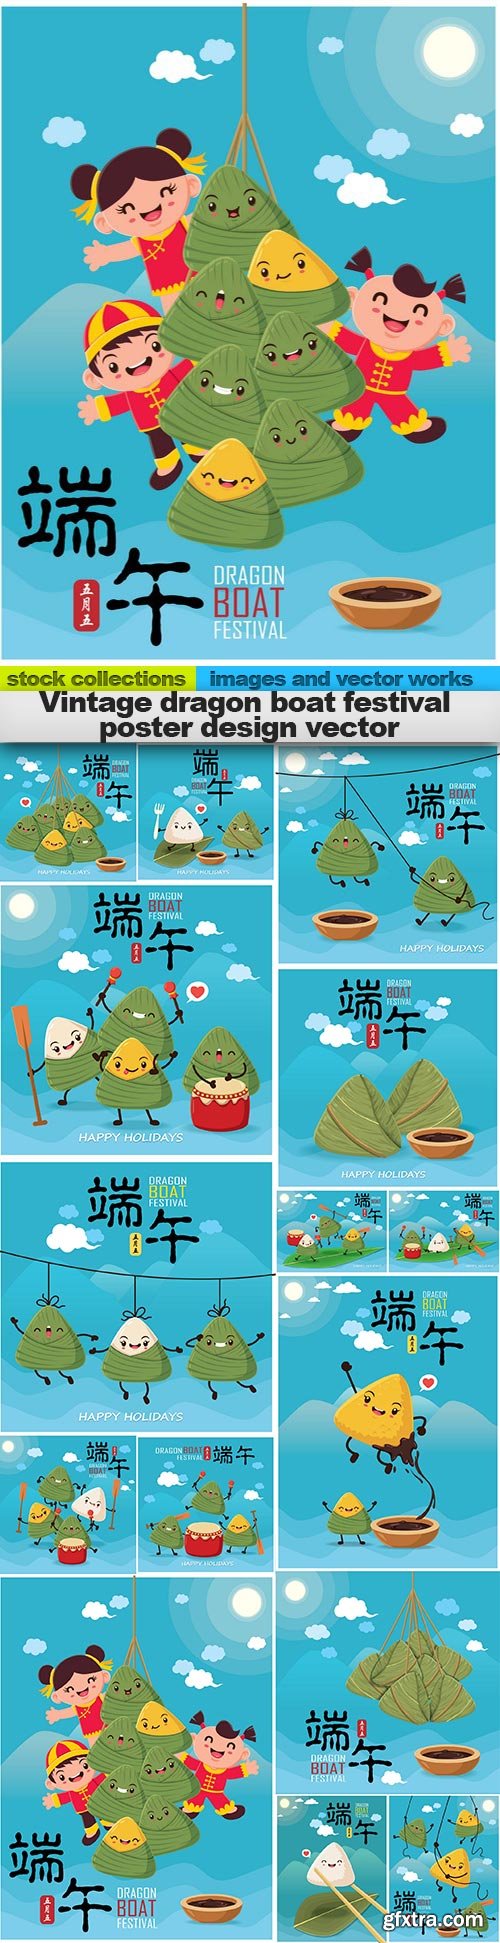 Vintage dragon boat festival poster design vector, 15 x EPS